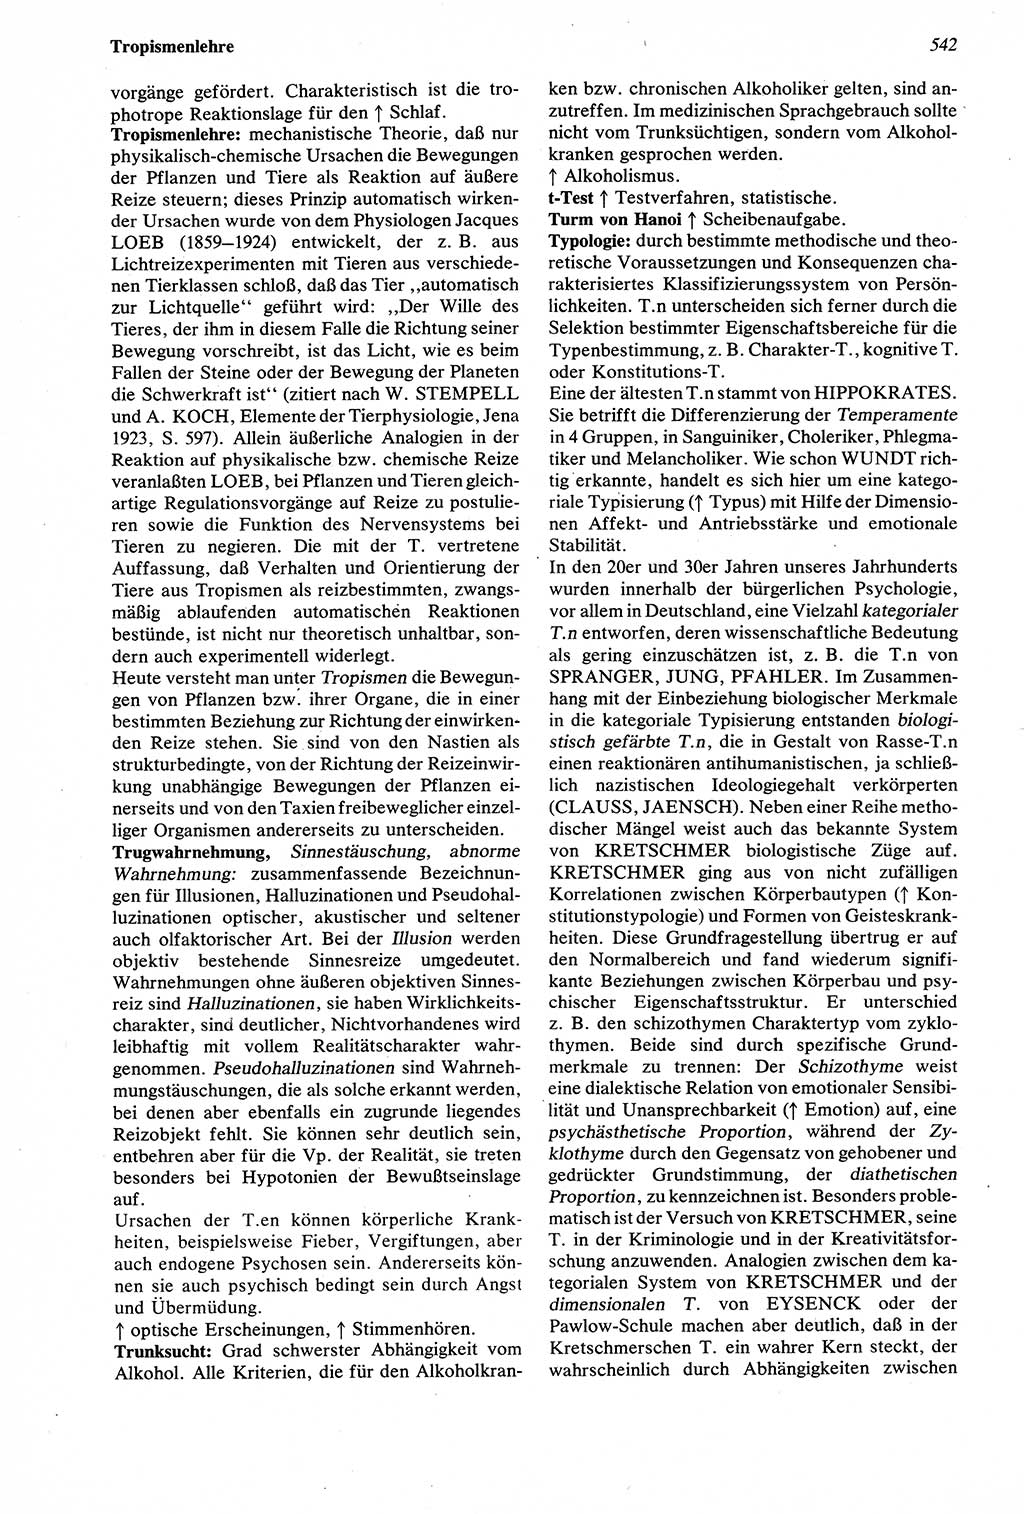 Wörterbuch der Psychologie [Deutsche Demokratische Republik (DDR)] 1976, Seite 542 (Wb. Psych. DDR 1976, S. 542)